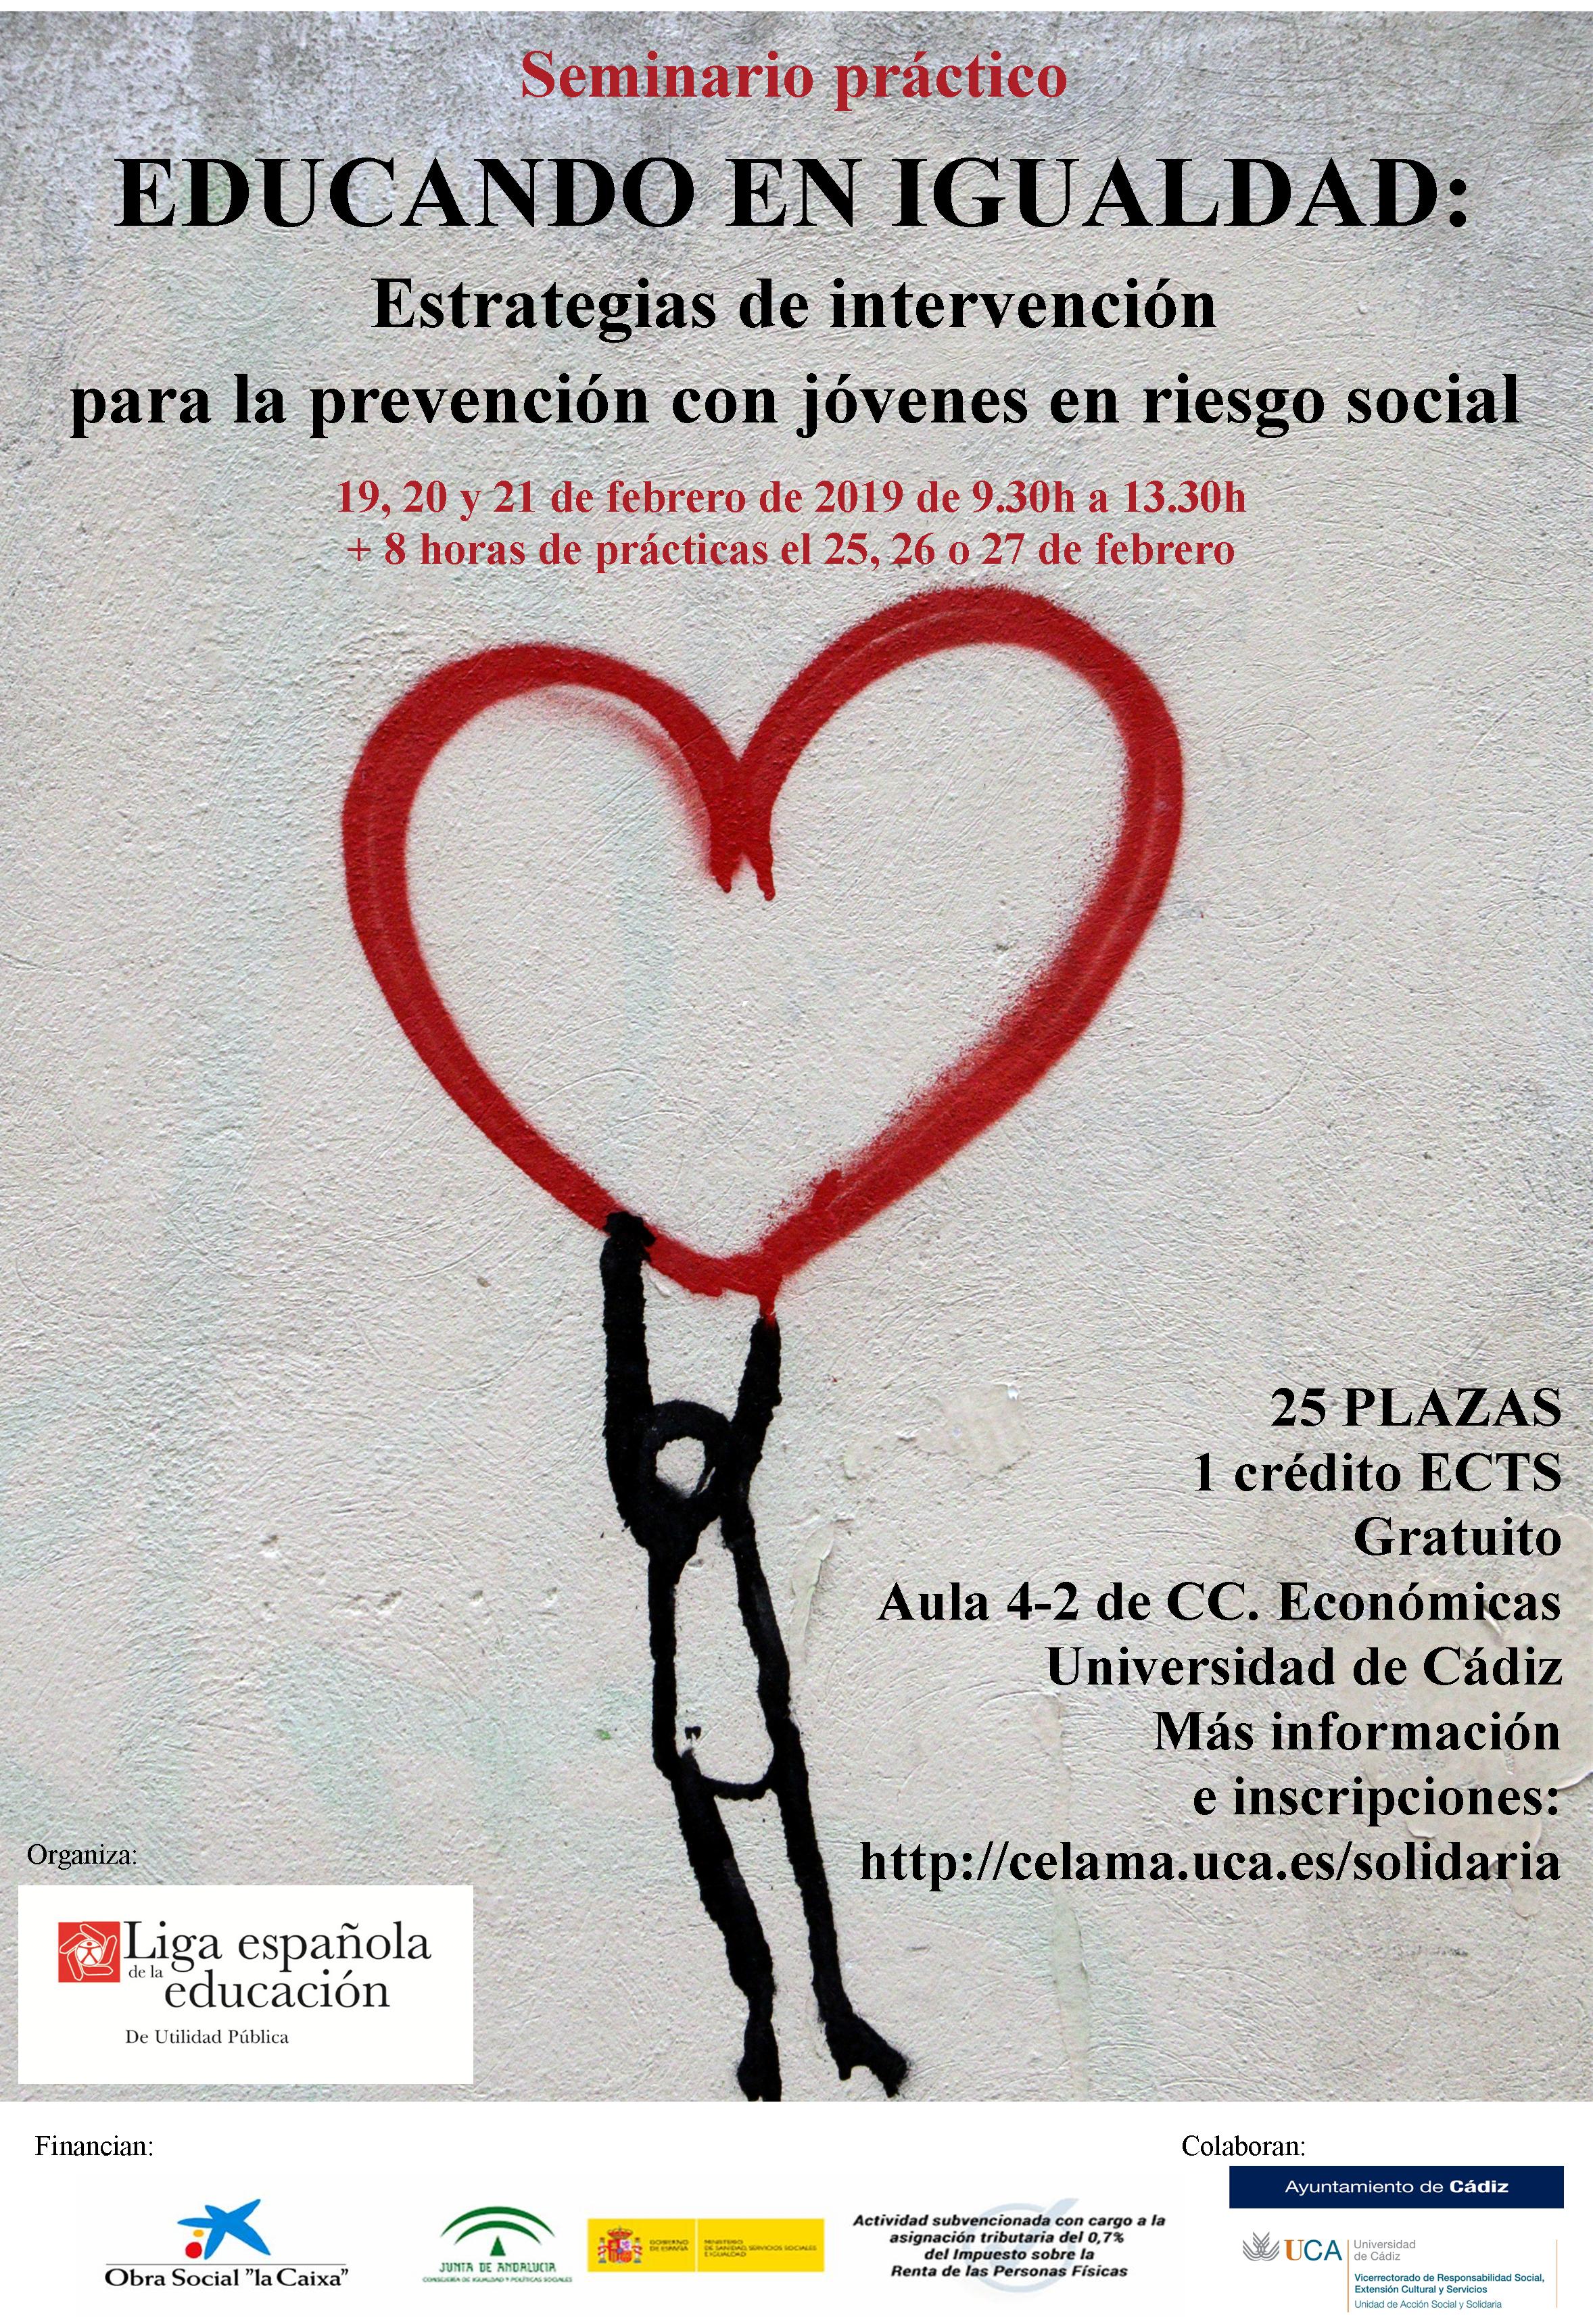 Seminario práctico “Educando en igualdad: Estrategias de intervención para la prevención con jóvenes en riesgo social.”. 19, 20 y 21 de febrero. 1 crédito ECTS. Campus de Cádiz